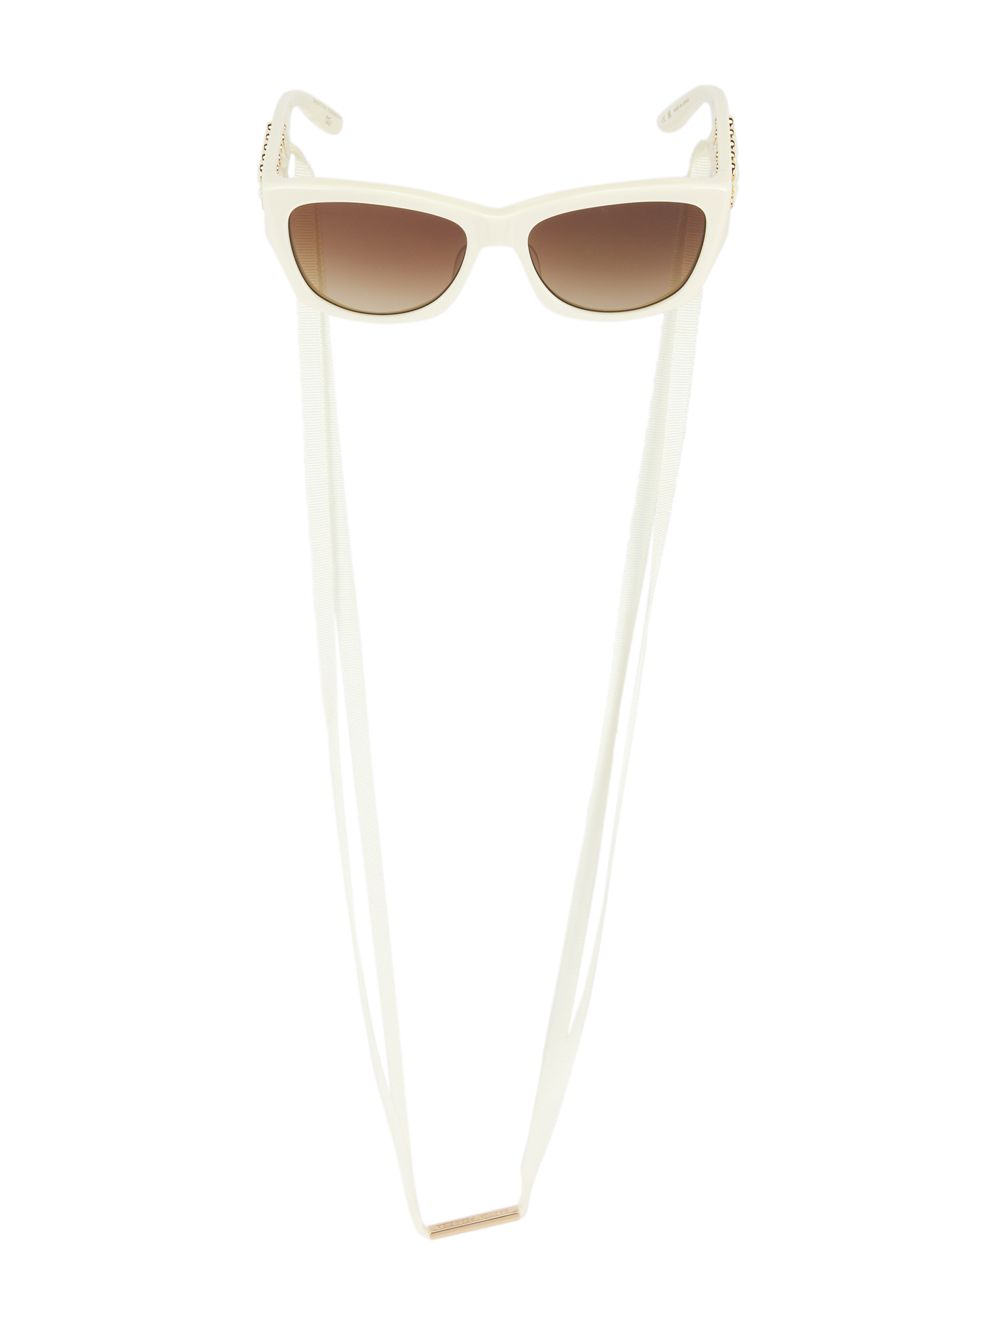 Прямоугольные солнцезащитные очки Cora 56 мм Barton Perreira, слоновая кость солнцезащитные очки barton perreira x teddy vonranson 55mm barton perreira